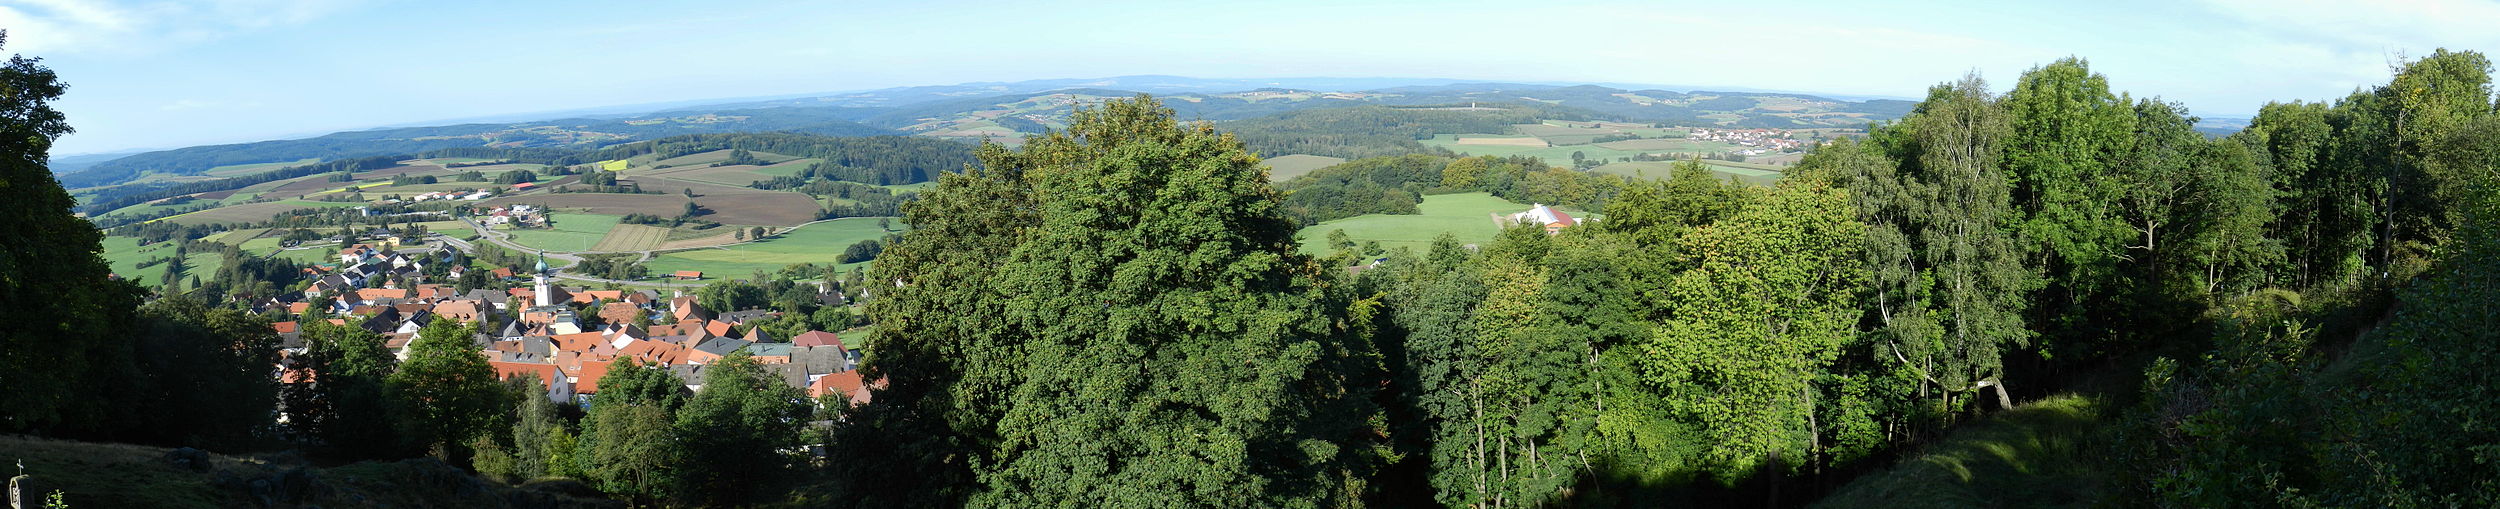 Blick vom Schlossberg in Tännesberg, im Hintergrund (von links) Pamsendorf, Fuchsendorf, Hohentreswitz, Trausnitz, Köllitz, Söllitz, Hochspeicher, Großenschwand und weitere Orte im Hintergrund am oberen Bildrand (2011)